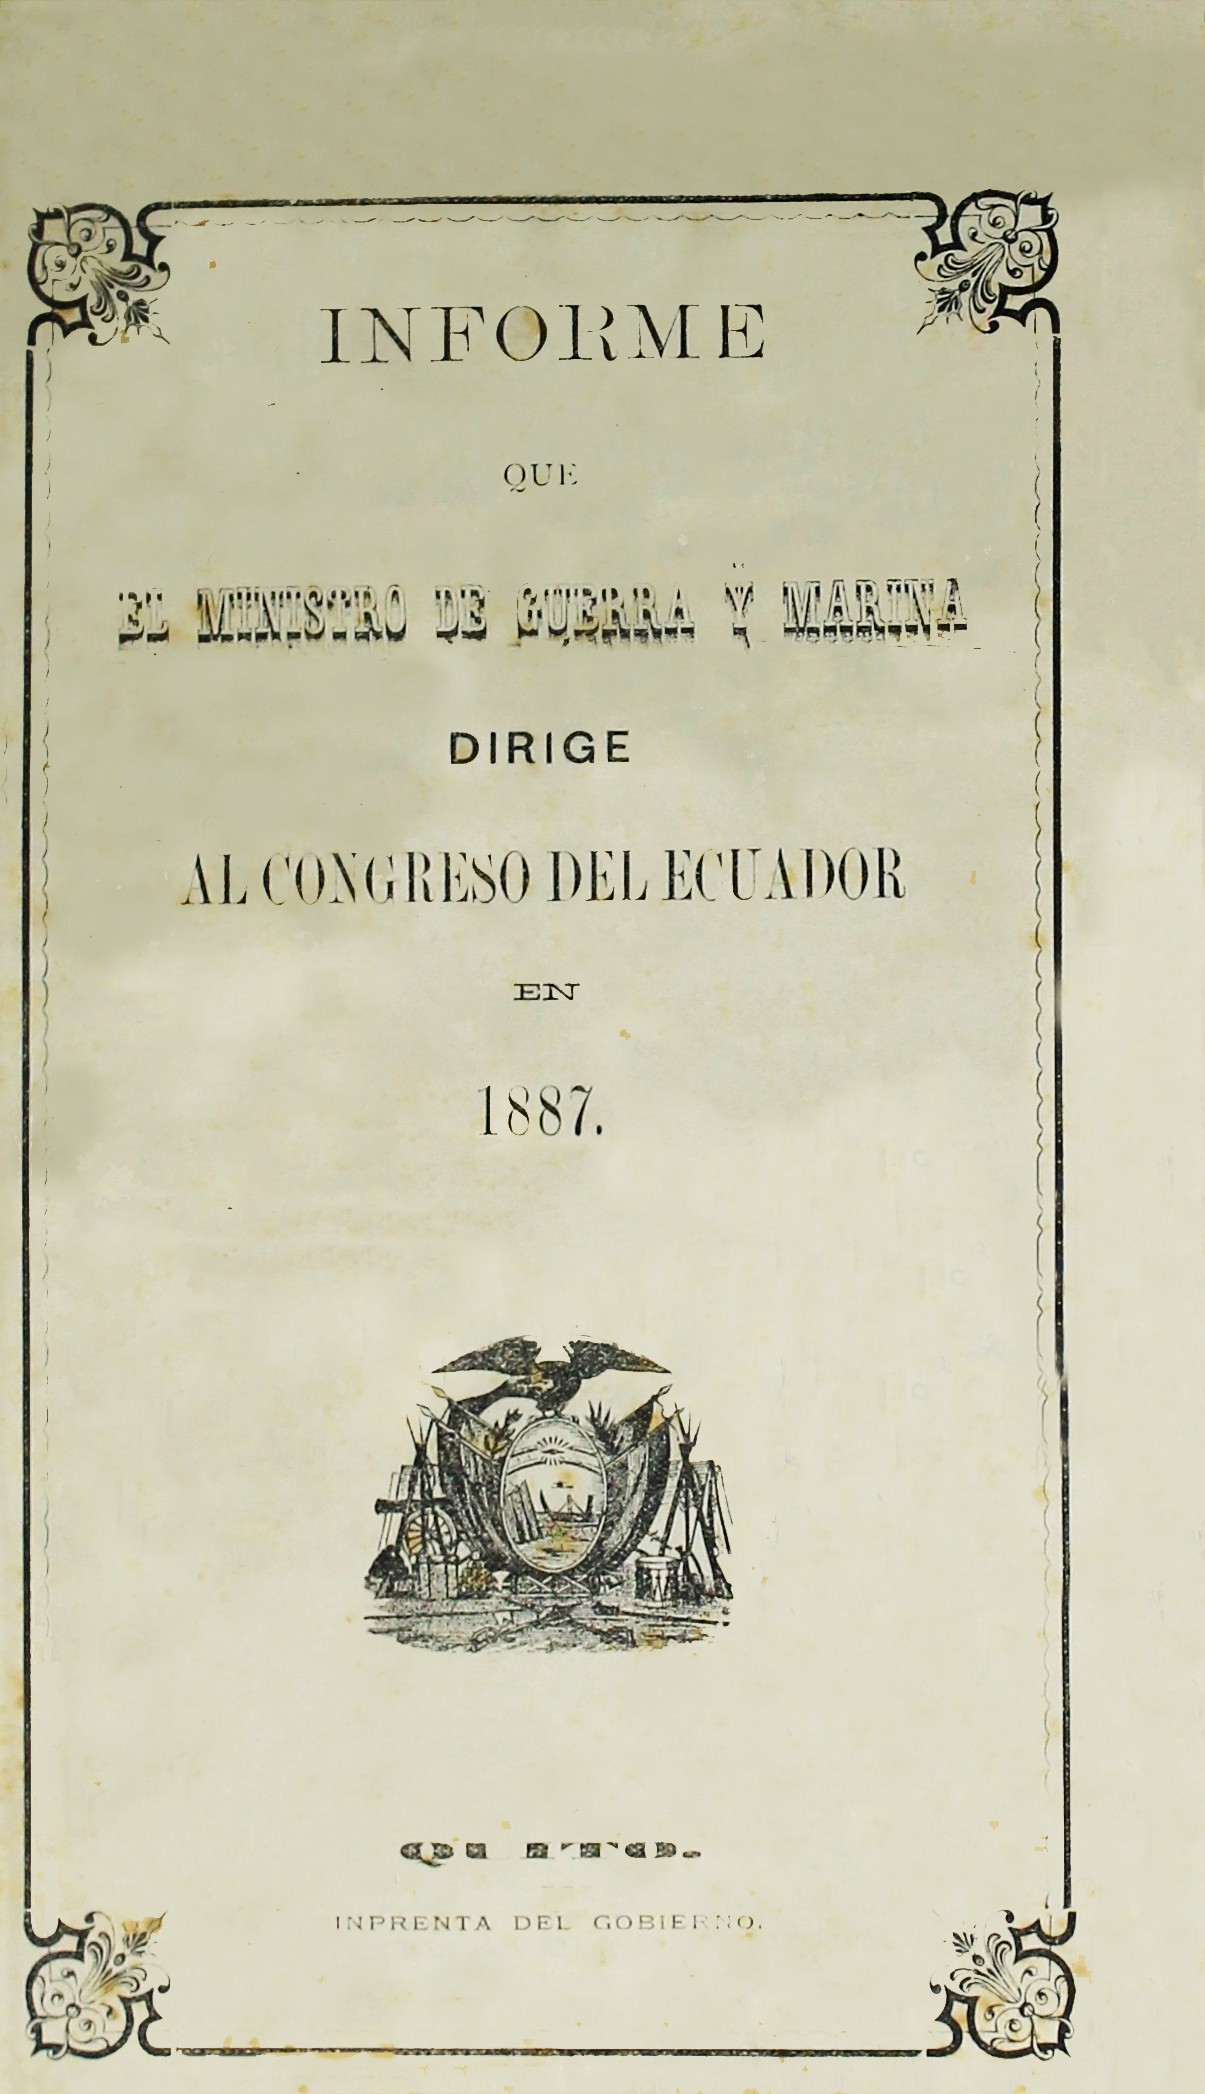 Informe que el Ministro de Guerra y Marina dirige al Congreso del Ecuador en 1887